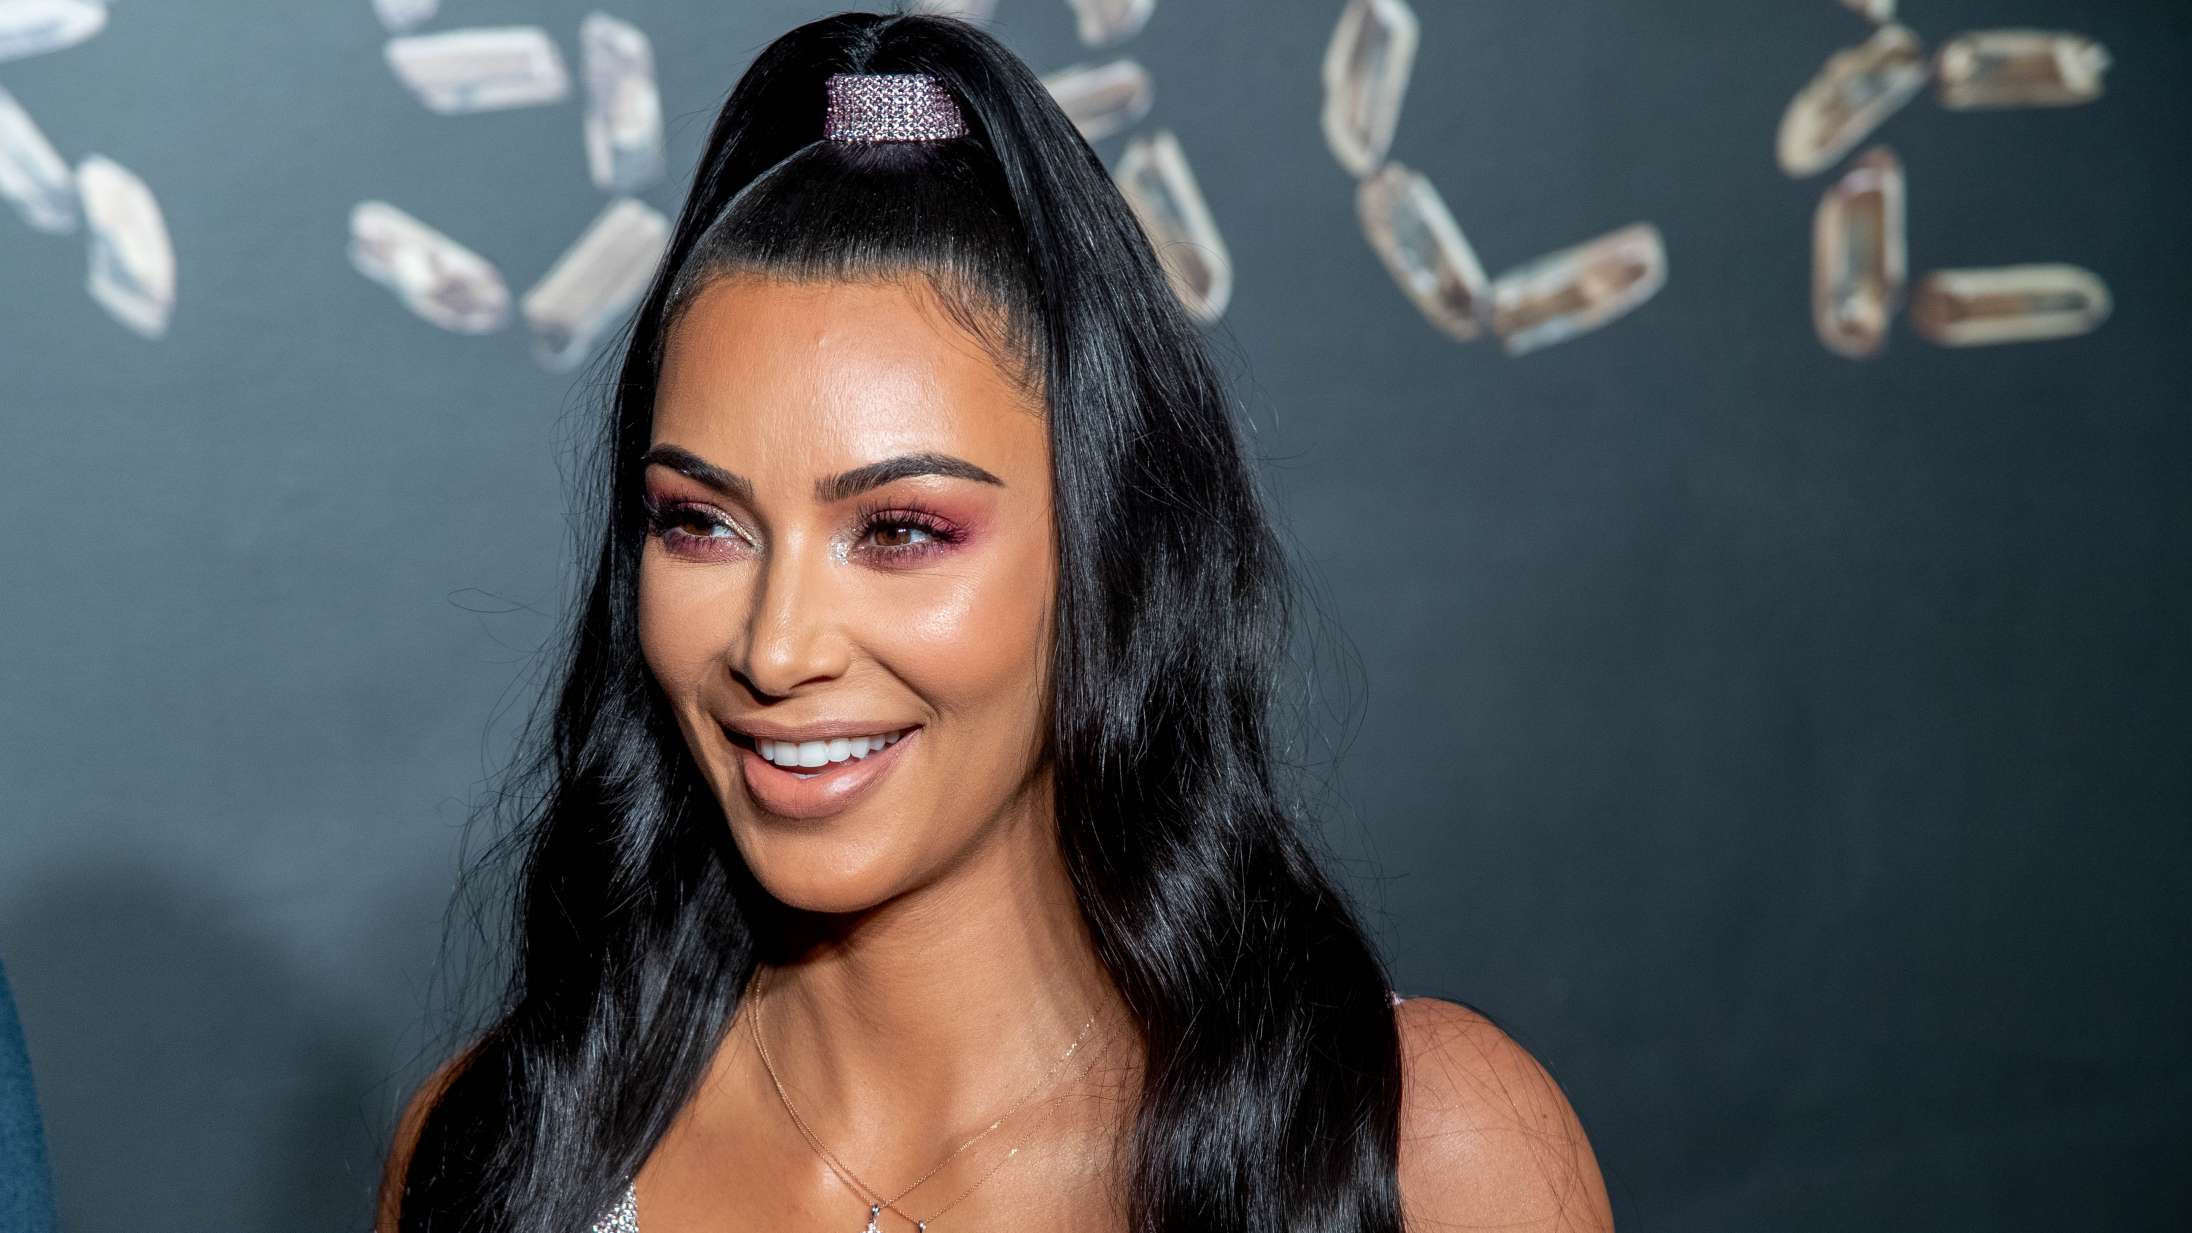 Kim Kardashian i modvind efter karriereråd til kvinder: »Let røven og kom i sving«